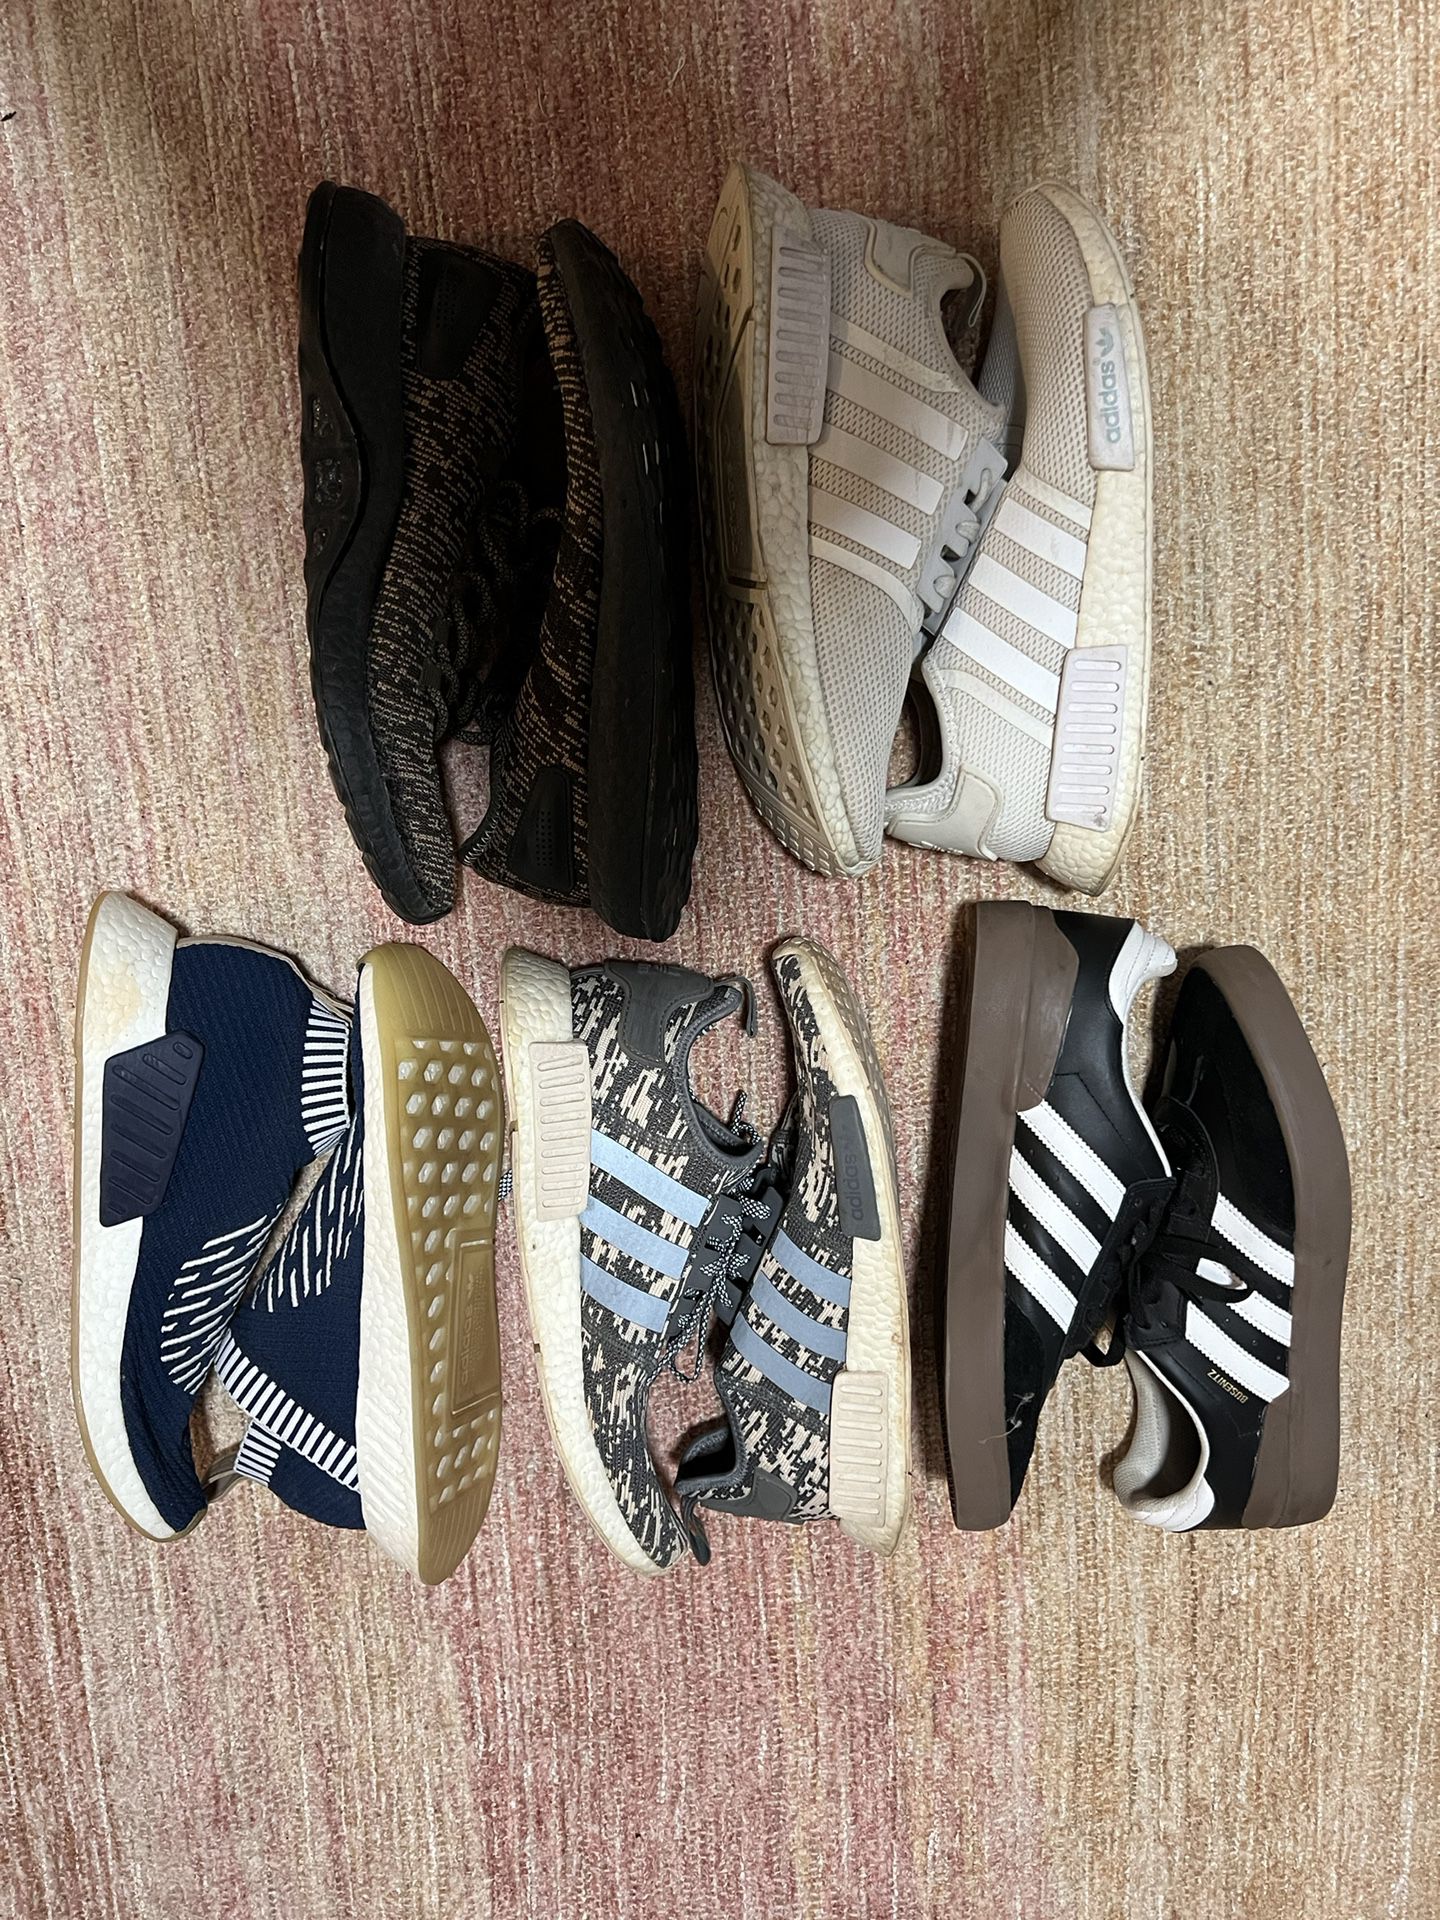 Adidas Sneakers Grab Bag, Size 11 + 11 1/2